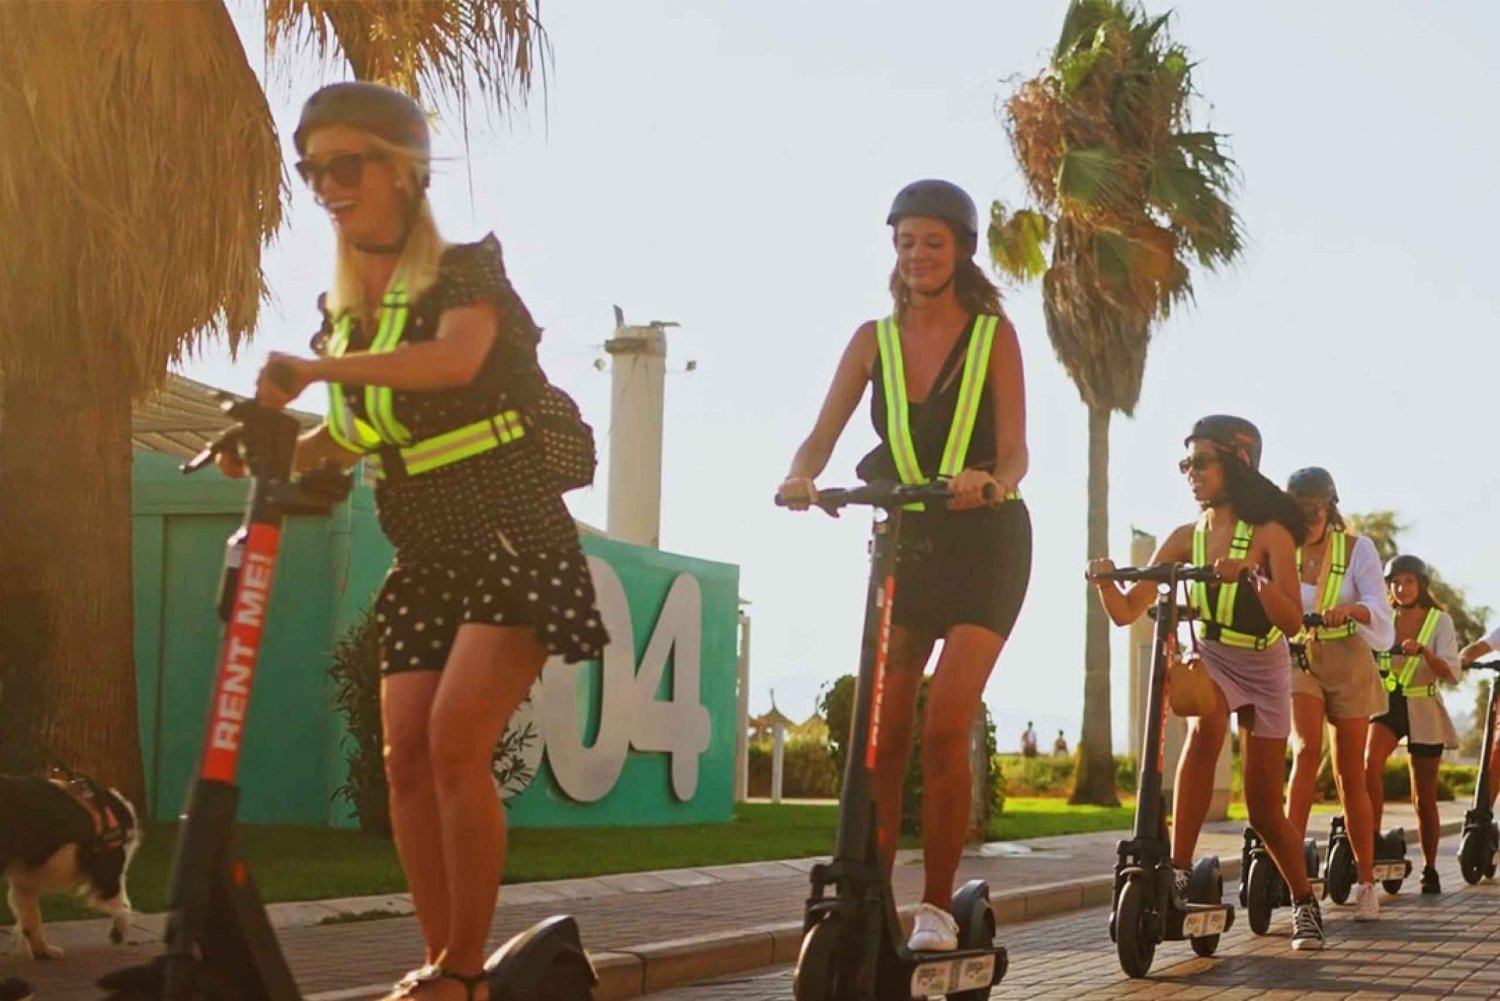 Playa de Palma: wypożyczalnia e-skuterów i kasków